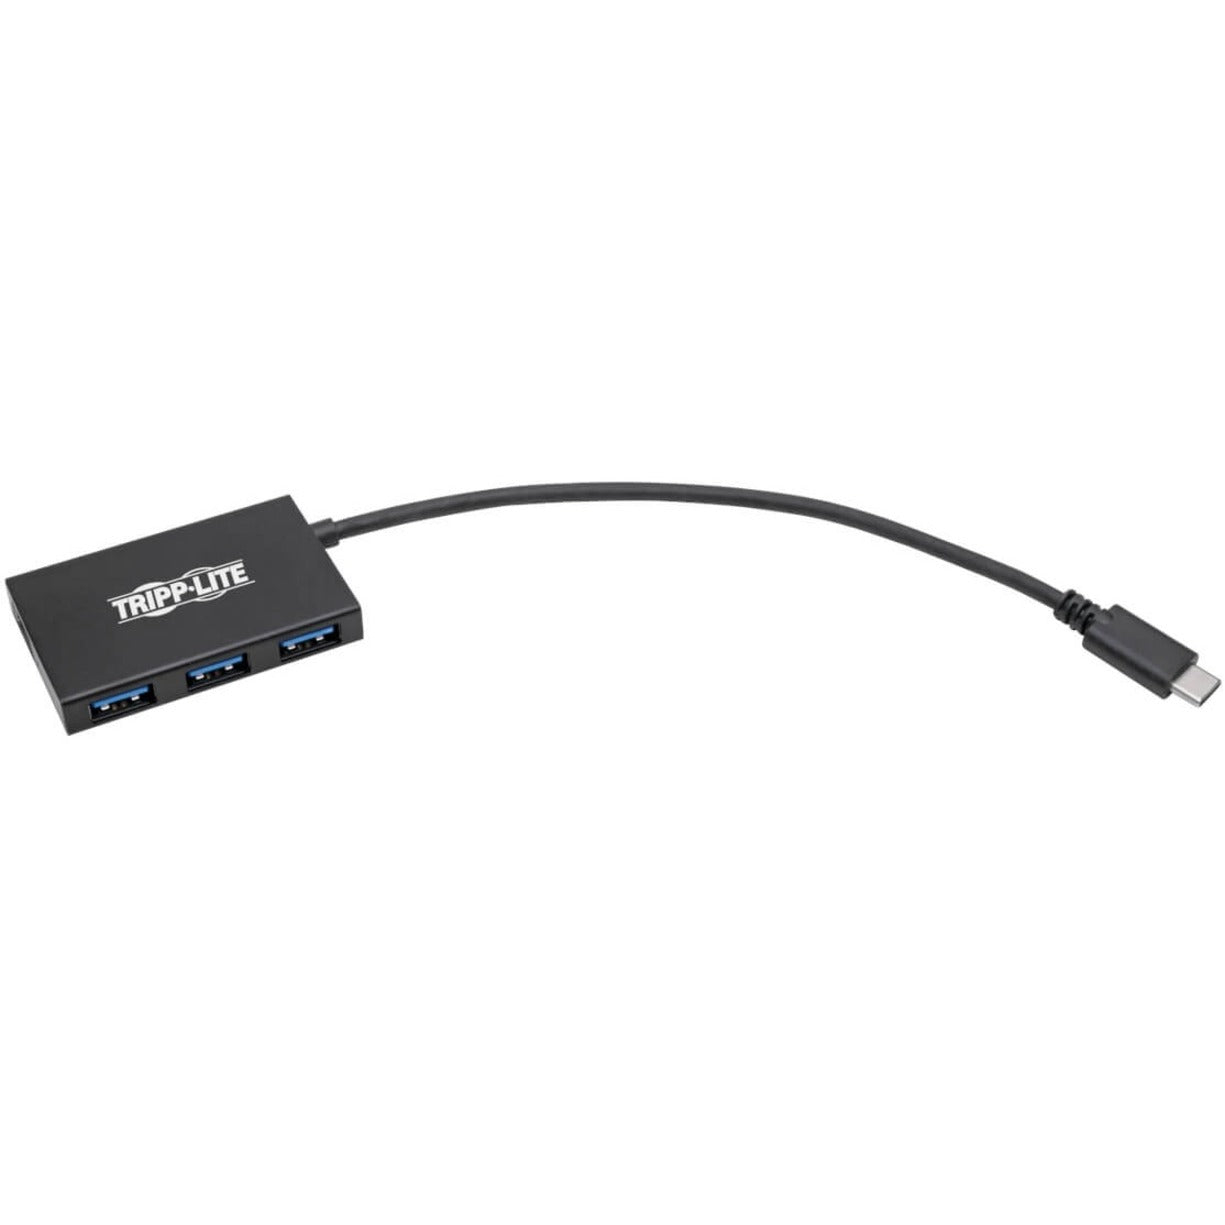 Tripp Lite U460-004-4A-AL USB 3.1 C Hub, Aluminum Housing, 4-Port Compact USB 3.1